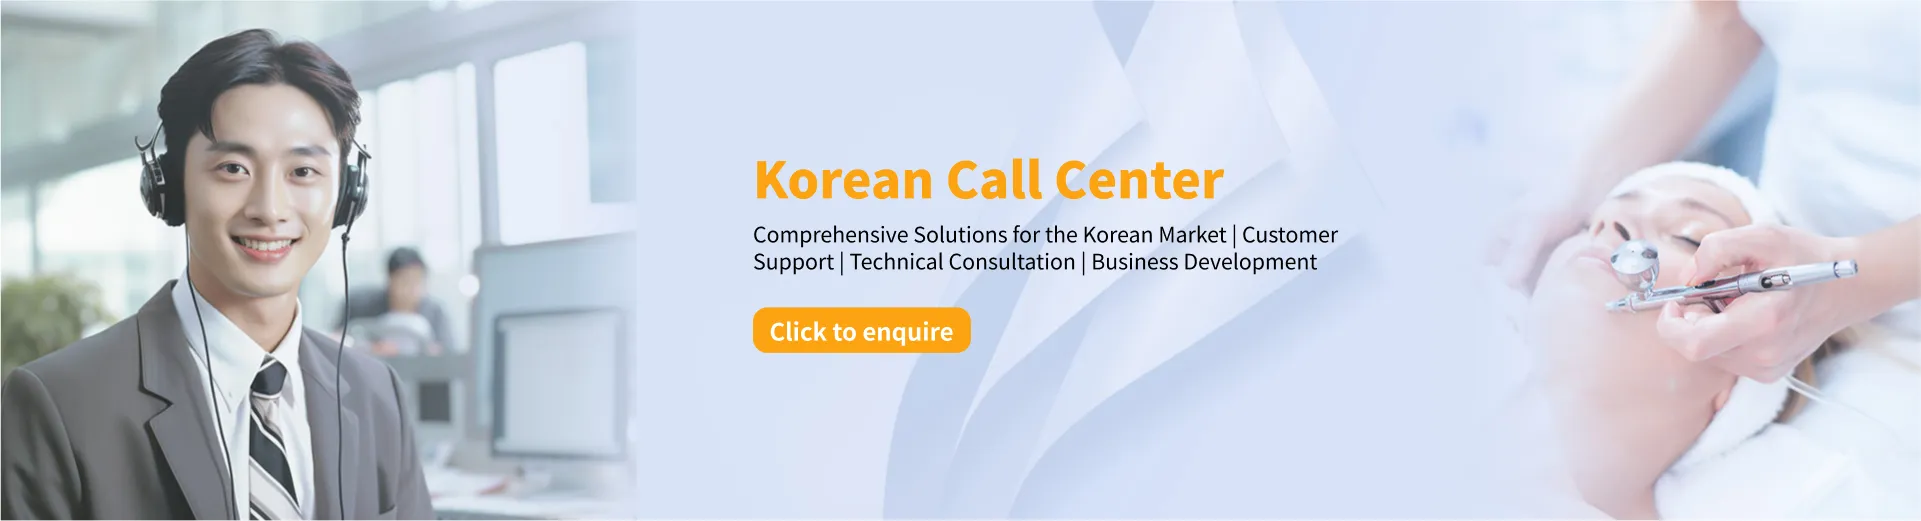 Korean Call Center